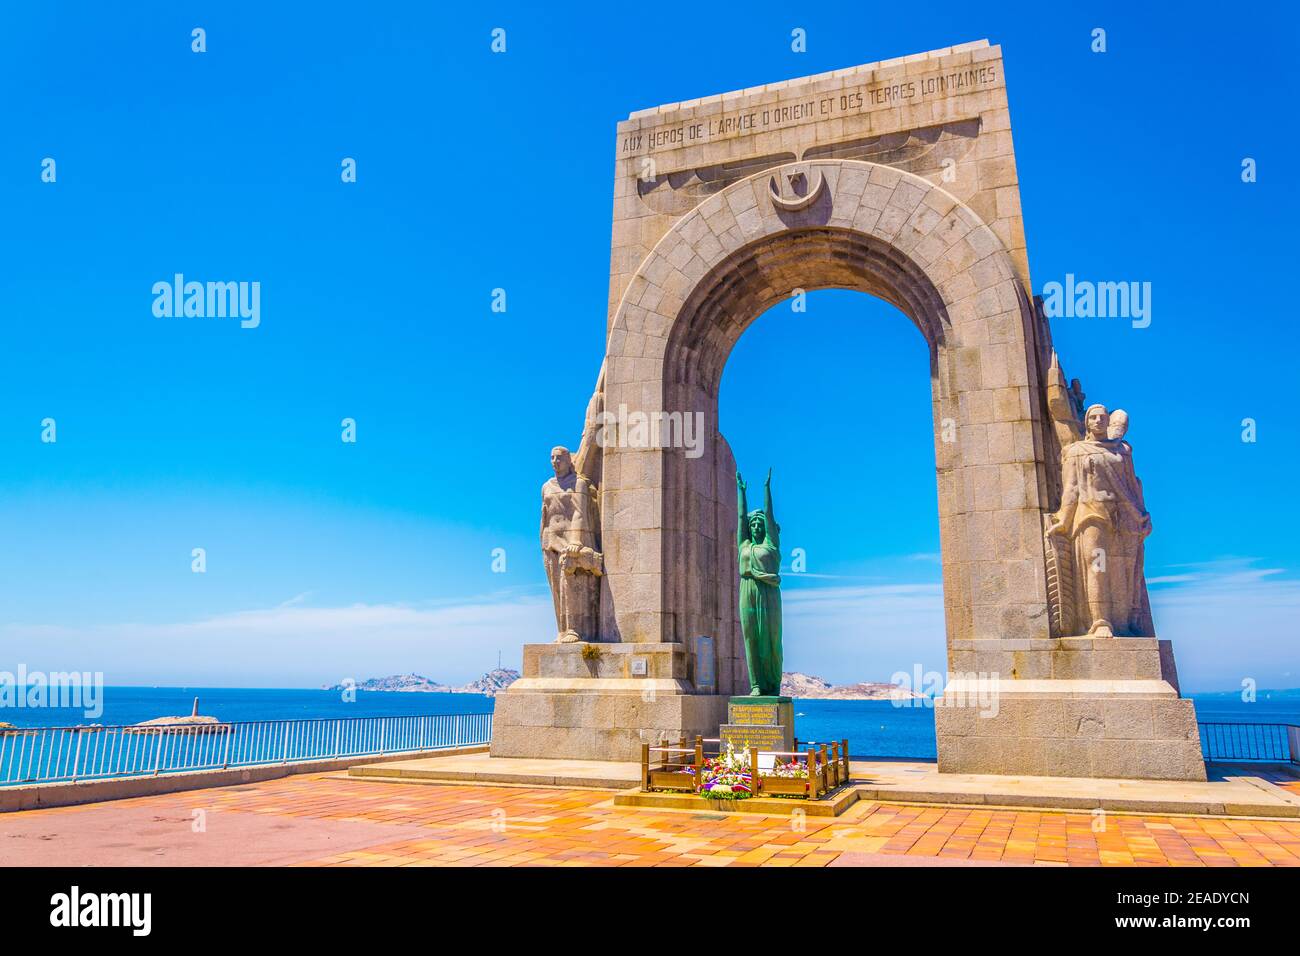 la porte de L'orient monument situated at Marseille, France Stock Photo -  Alamy